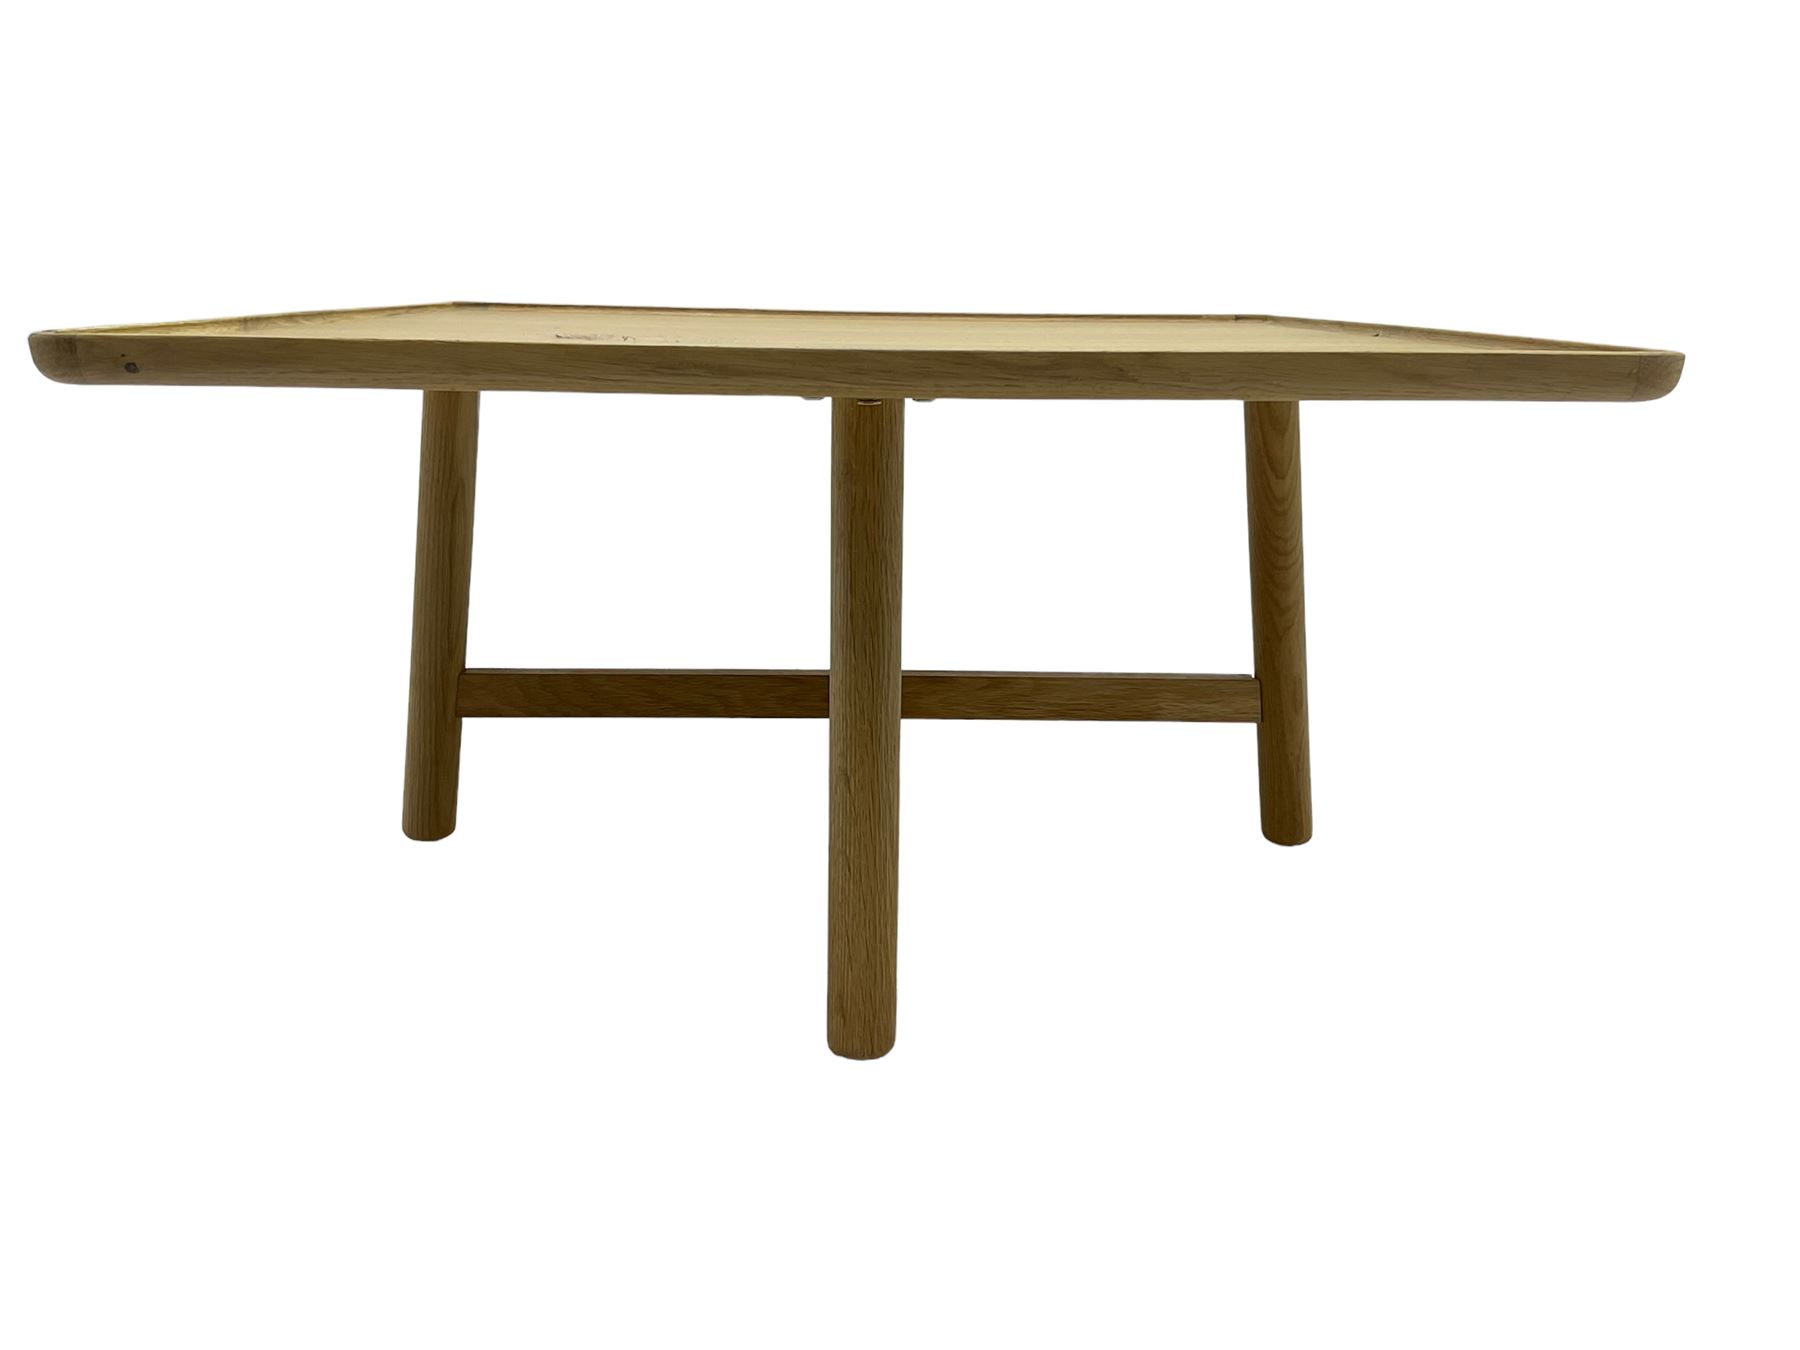 Contemporary square oak table